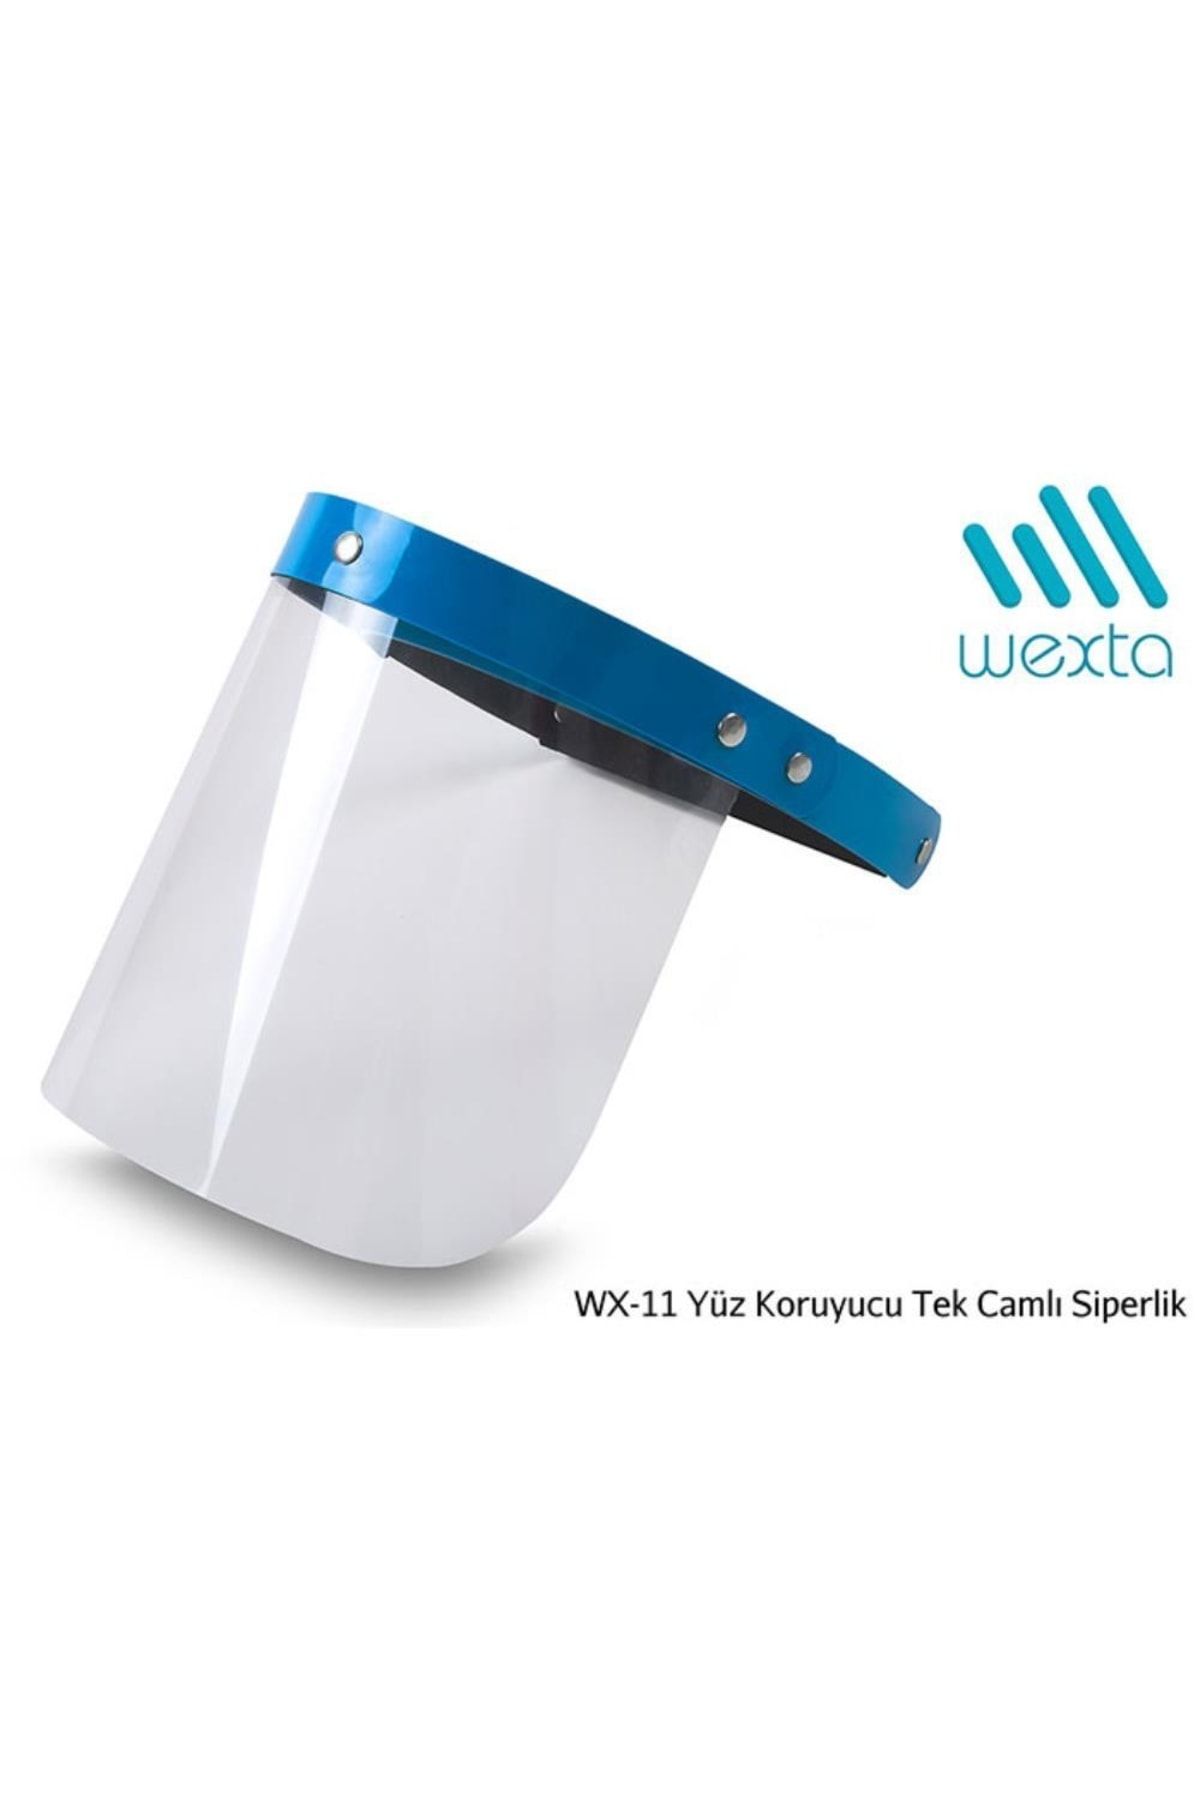 Wexta Wx-11 Yüz Koruyucu Tek Camlı Siperlik